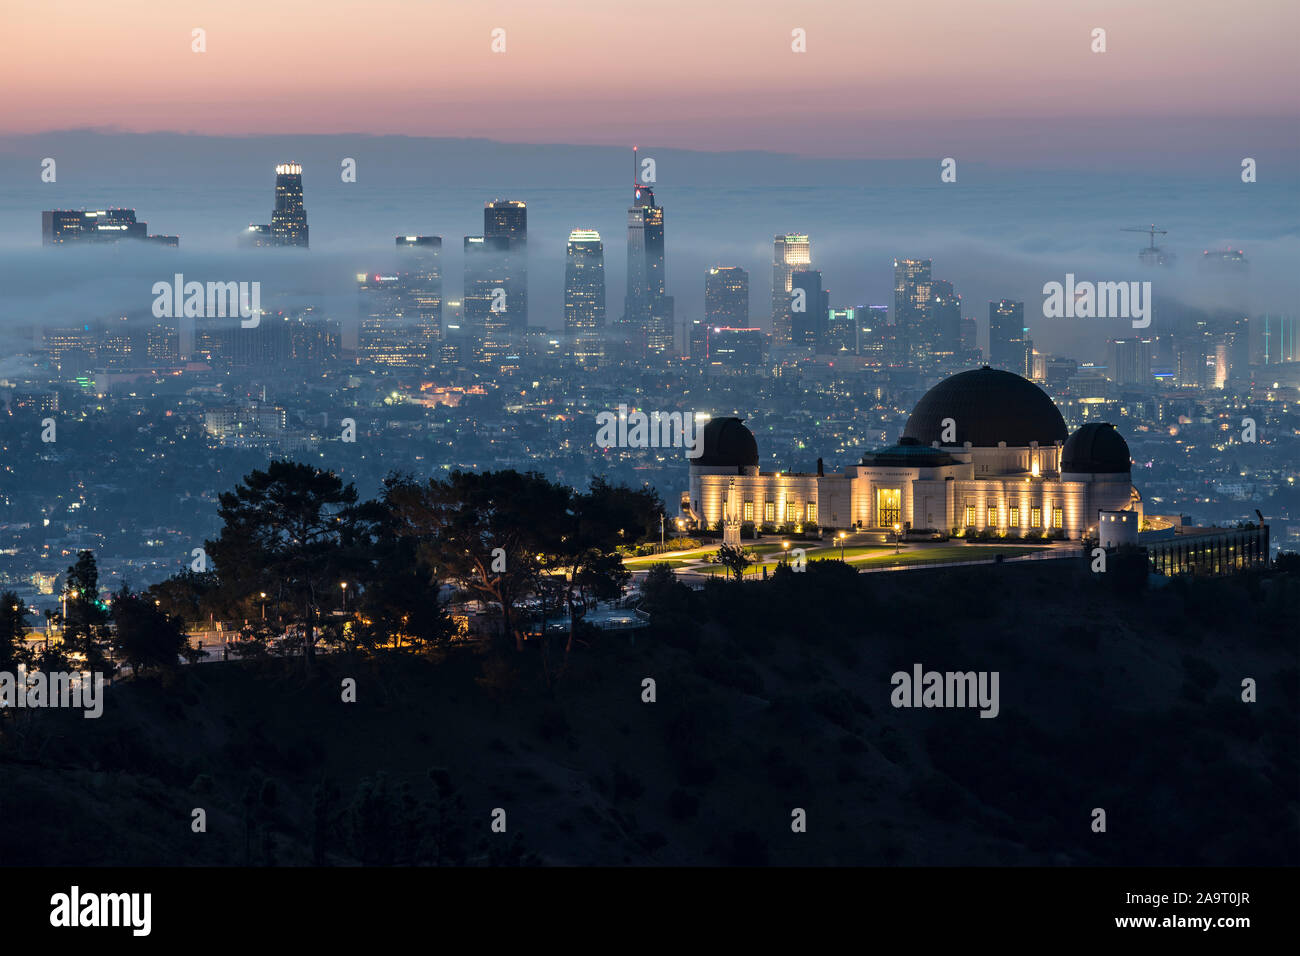 Los Angeles, California, Stati Uniti d'America - 10 Novembre 2019: mattinata nebbiosa alba vista del Parco Osservatorio Griffith. con il centro cittadino di Los Angeles skyline in backgrou Foto Stock